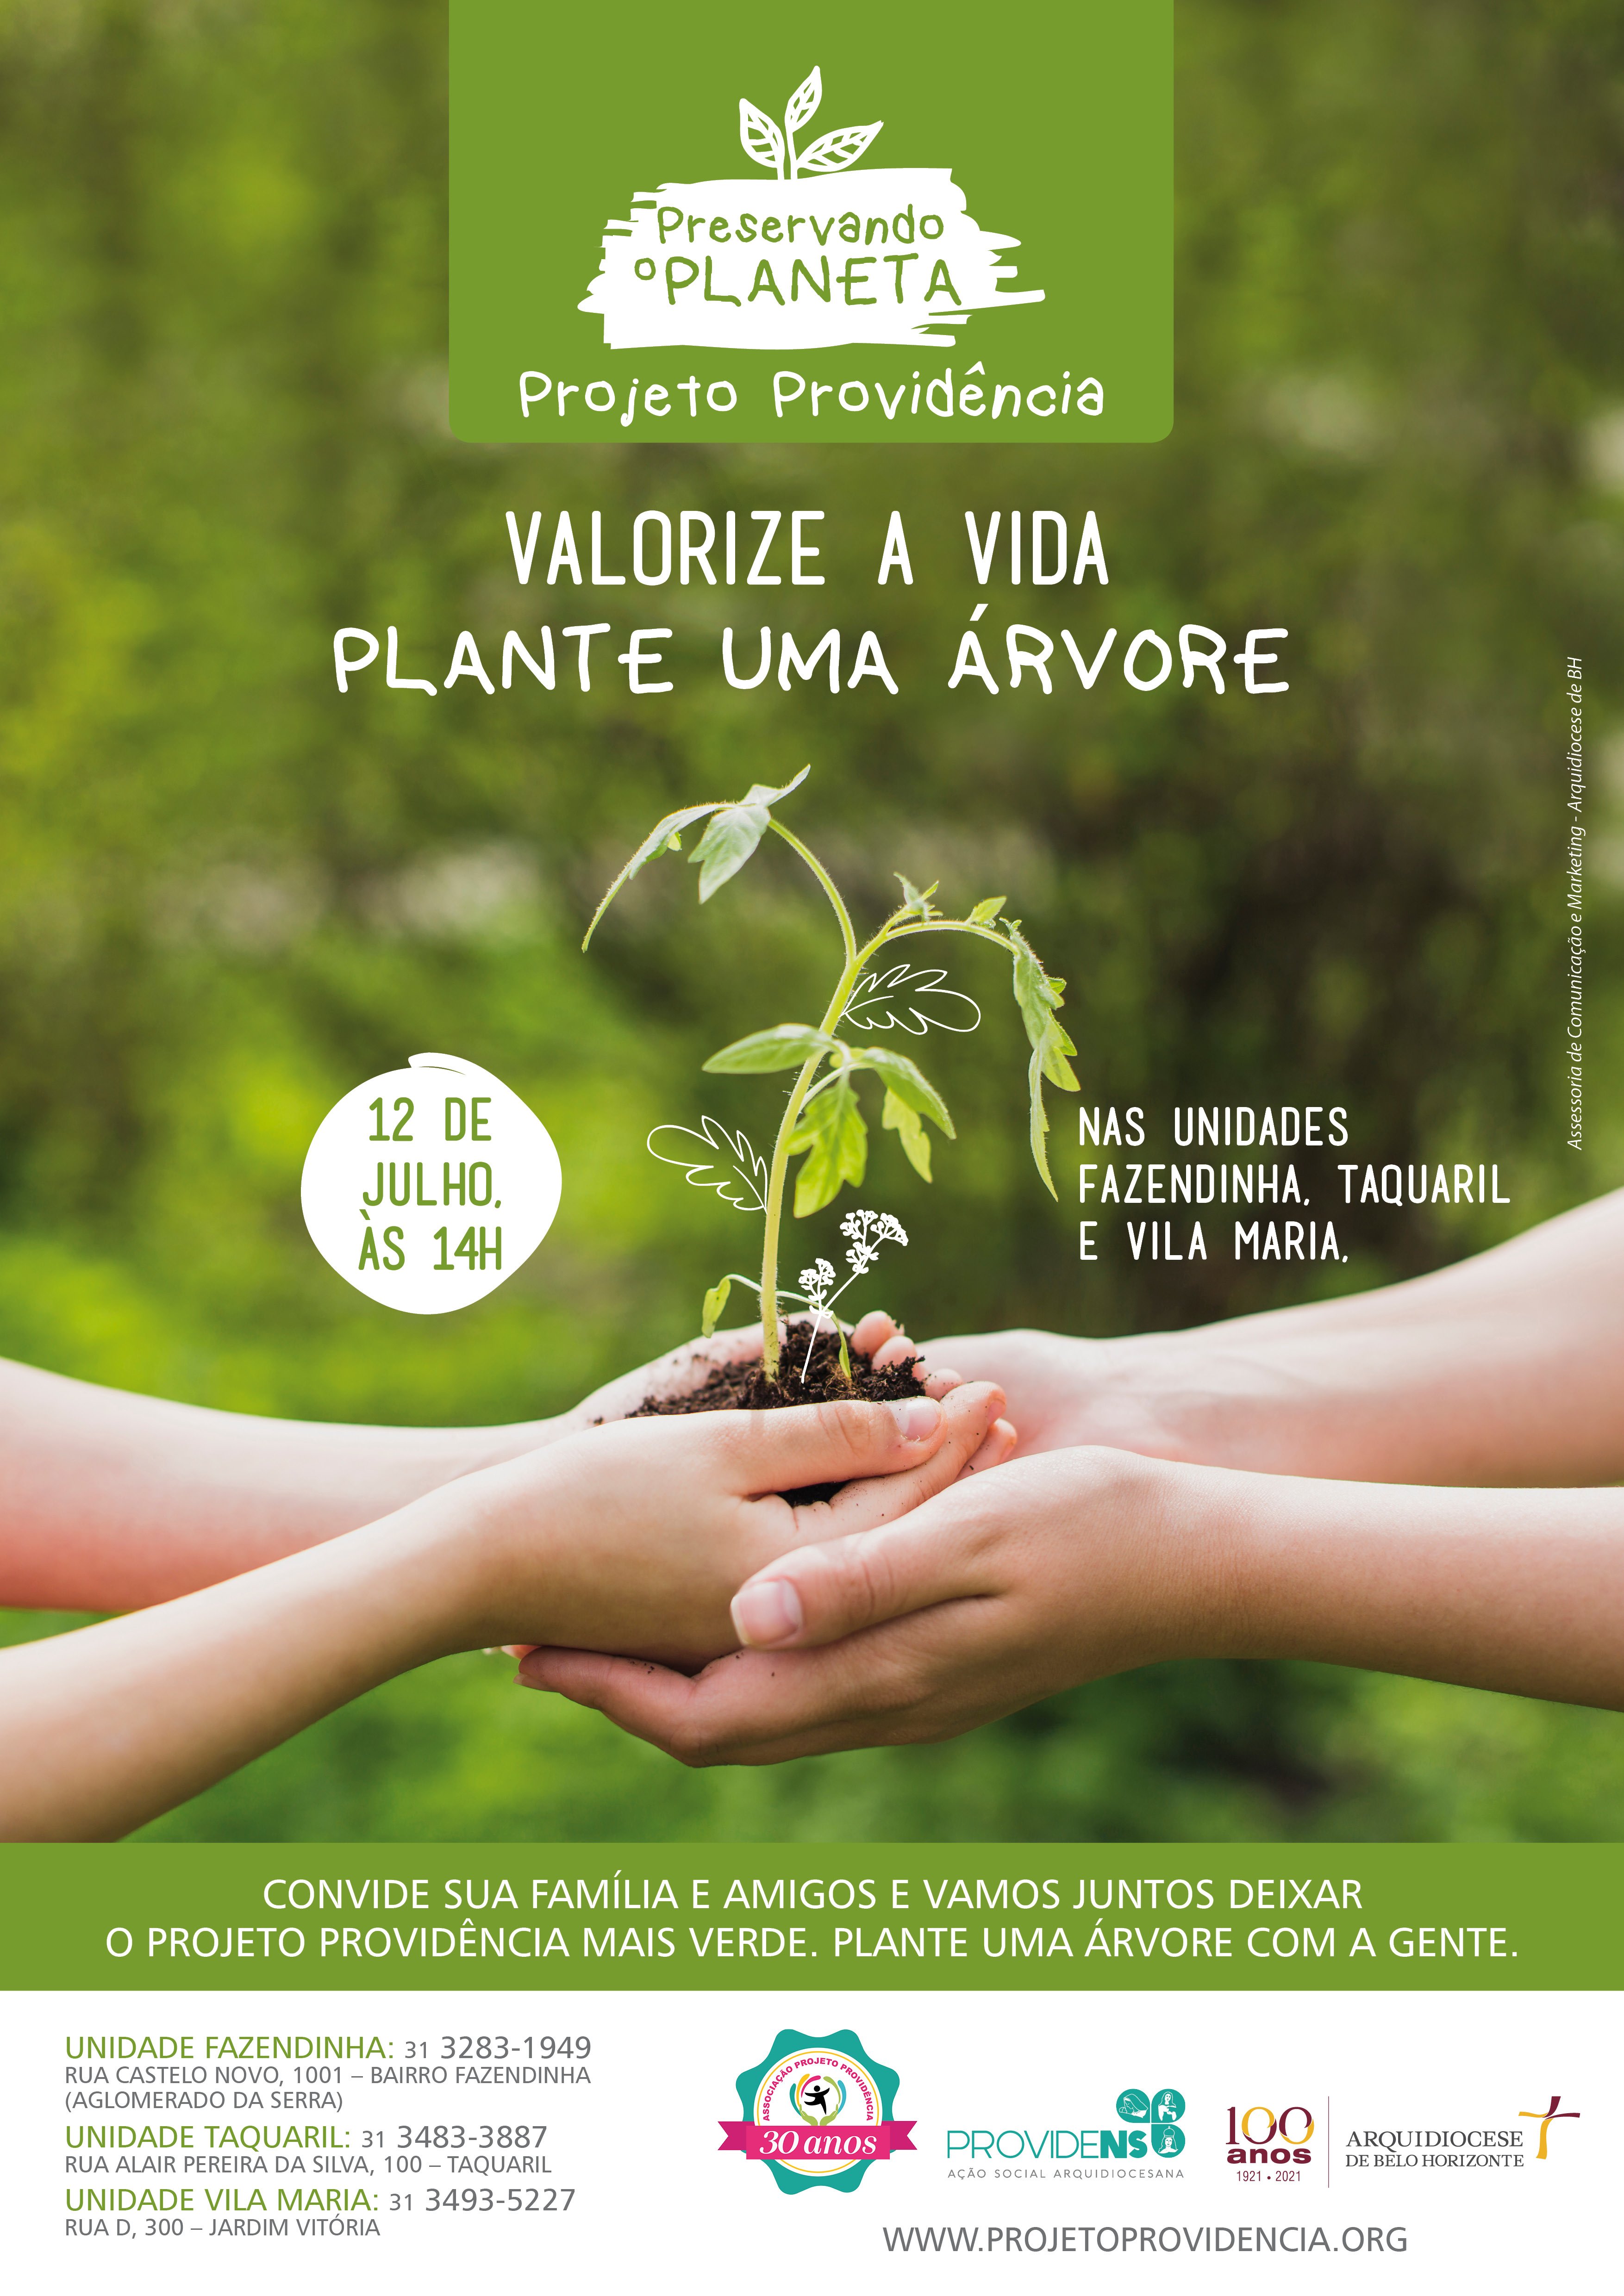 Preservando o planeta: plante uma árvore com as crianças do Projeto Providência